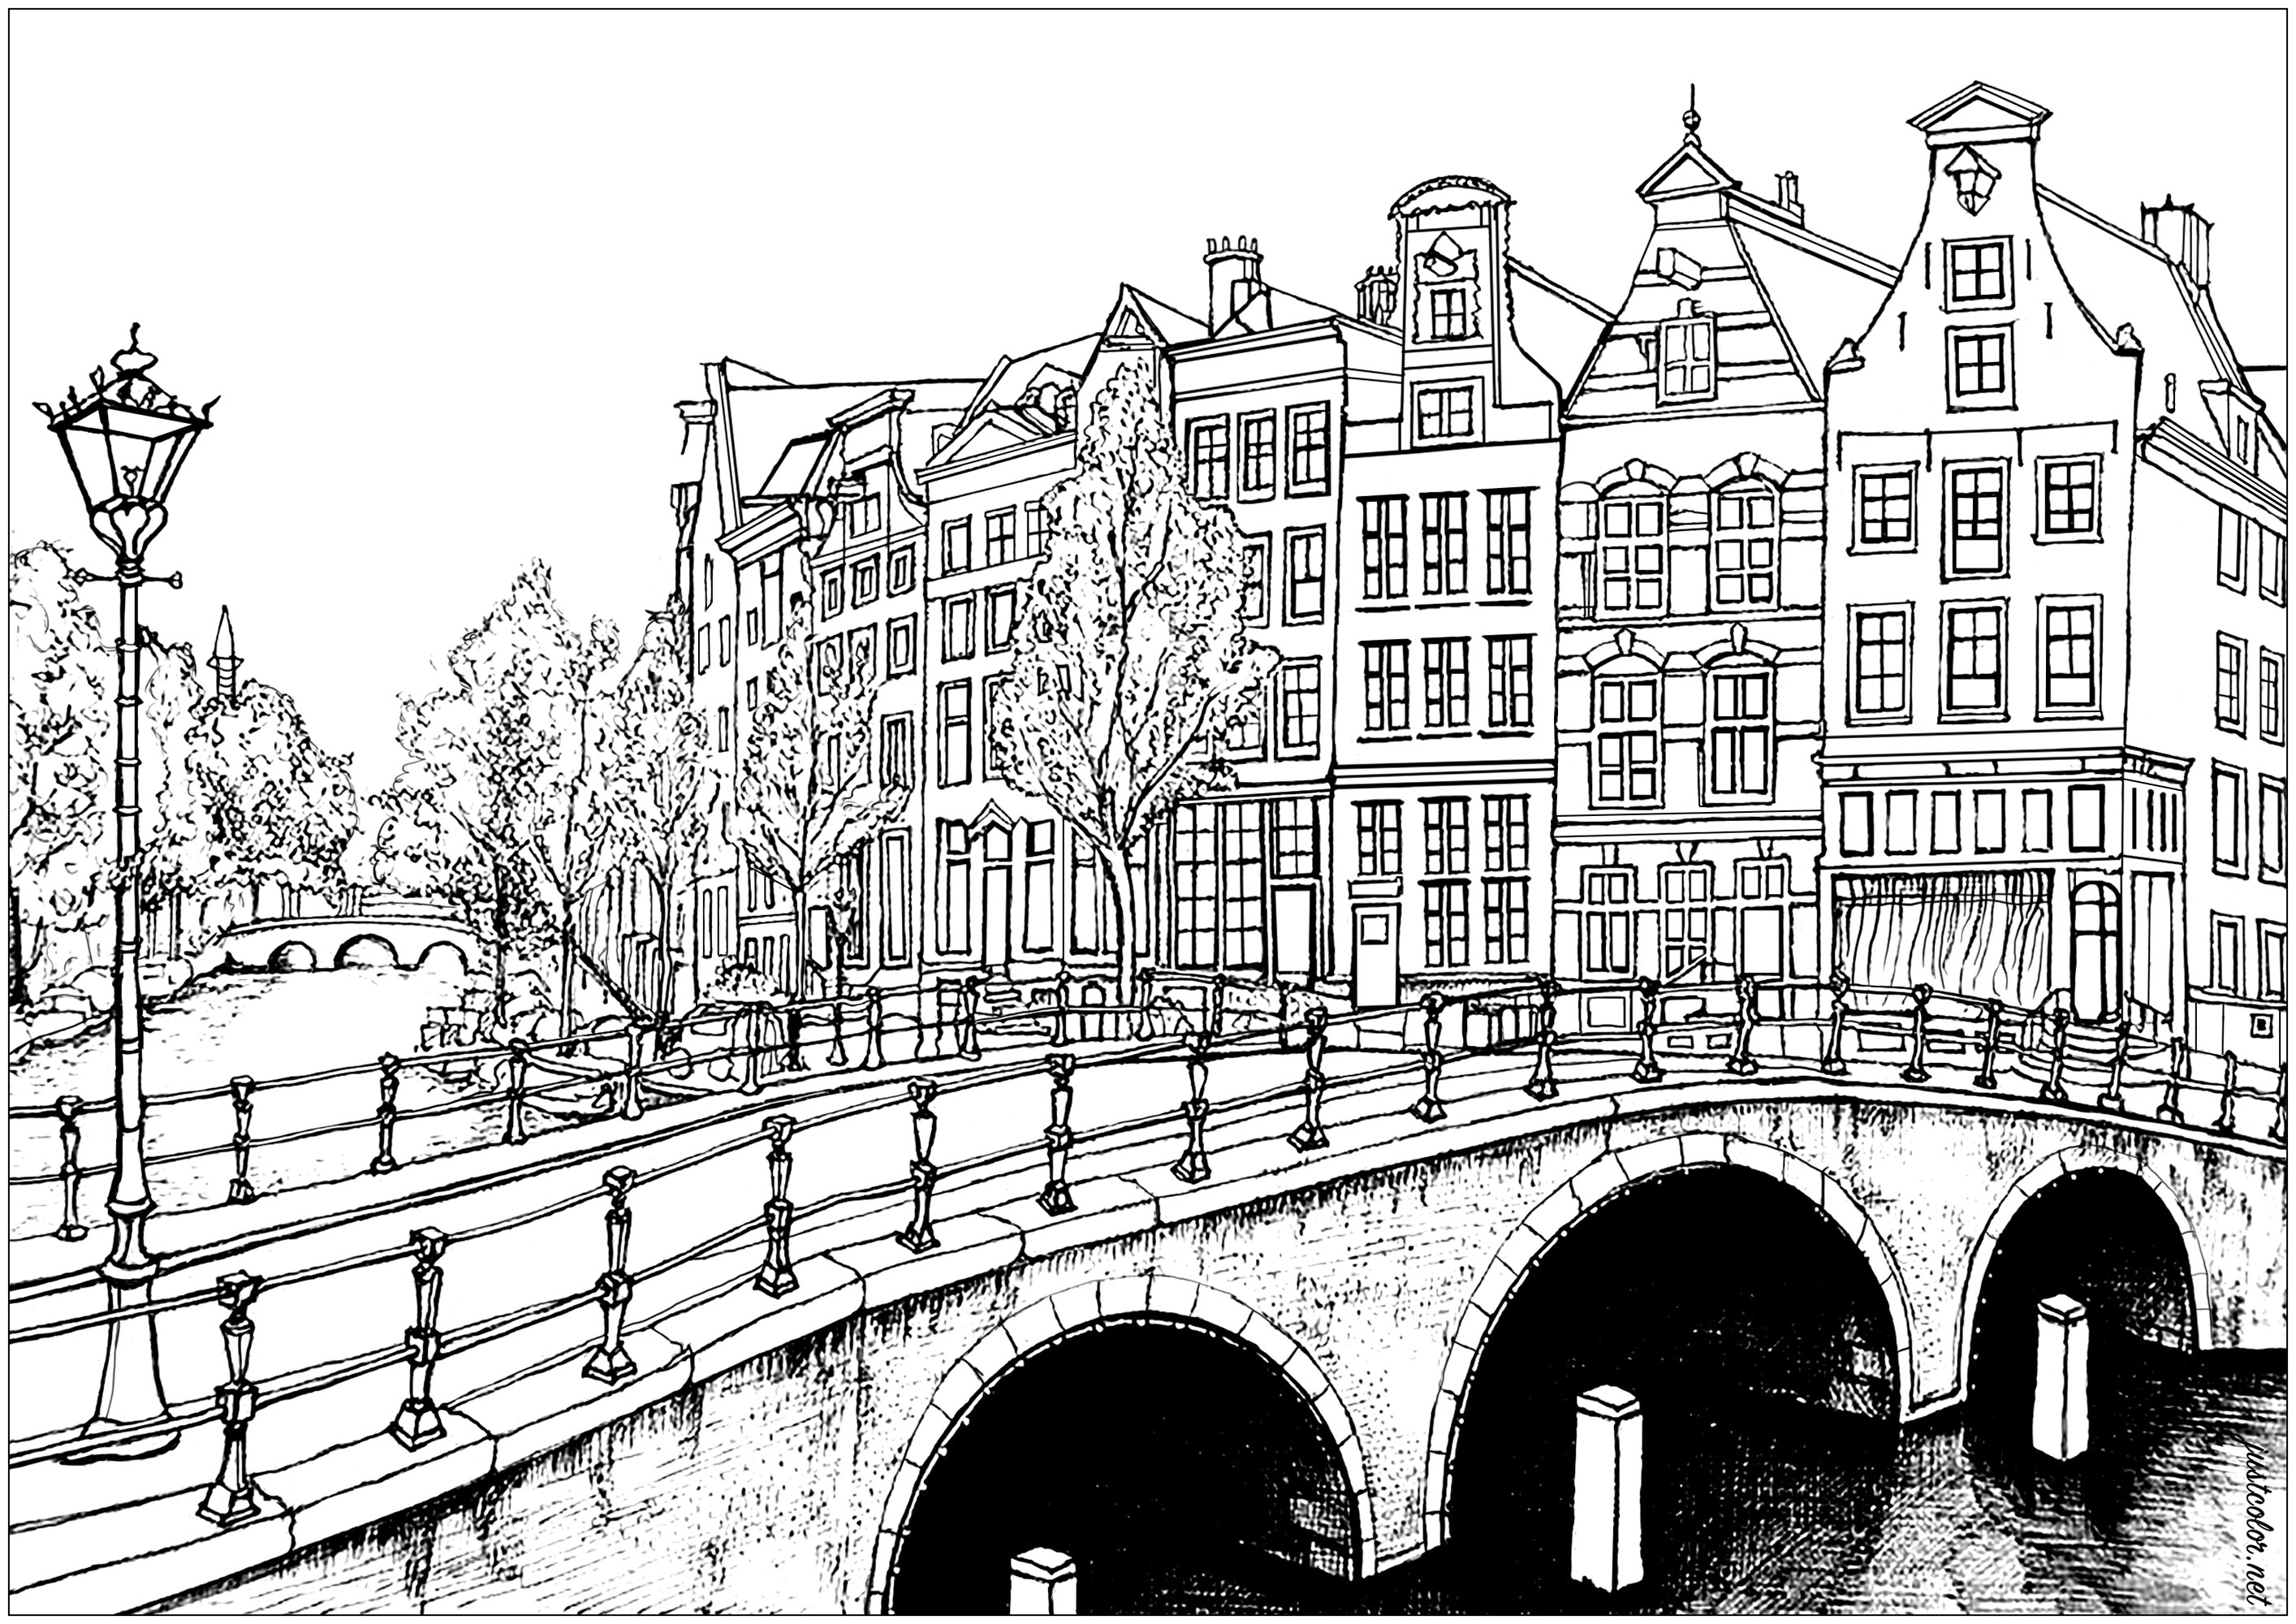 Maisons et ponts d'Amsterdam. Avec plus de 165 canaux, il est possible de parcourir 100 kilomètres sur l'eau à Amsterdam ! Encore plus impressionnant, il y a 1281 ponts dans la ville.La capitale hollandaise a de plus la plus forte concentration de musées au mètre carré de toutes les villes du monde. Les musées Van Gogh, Rijksmuseum et Stedelijk sont parmi les plus célèbres que vous puissiez visiter dans cette ville incroyable.